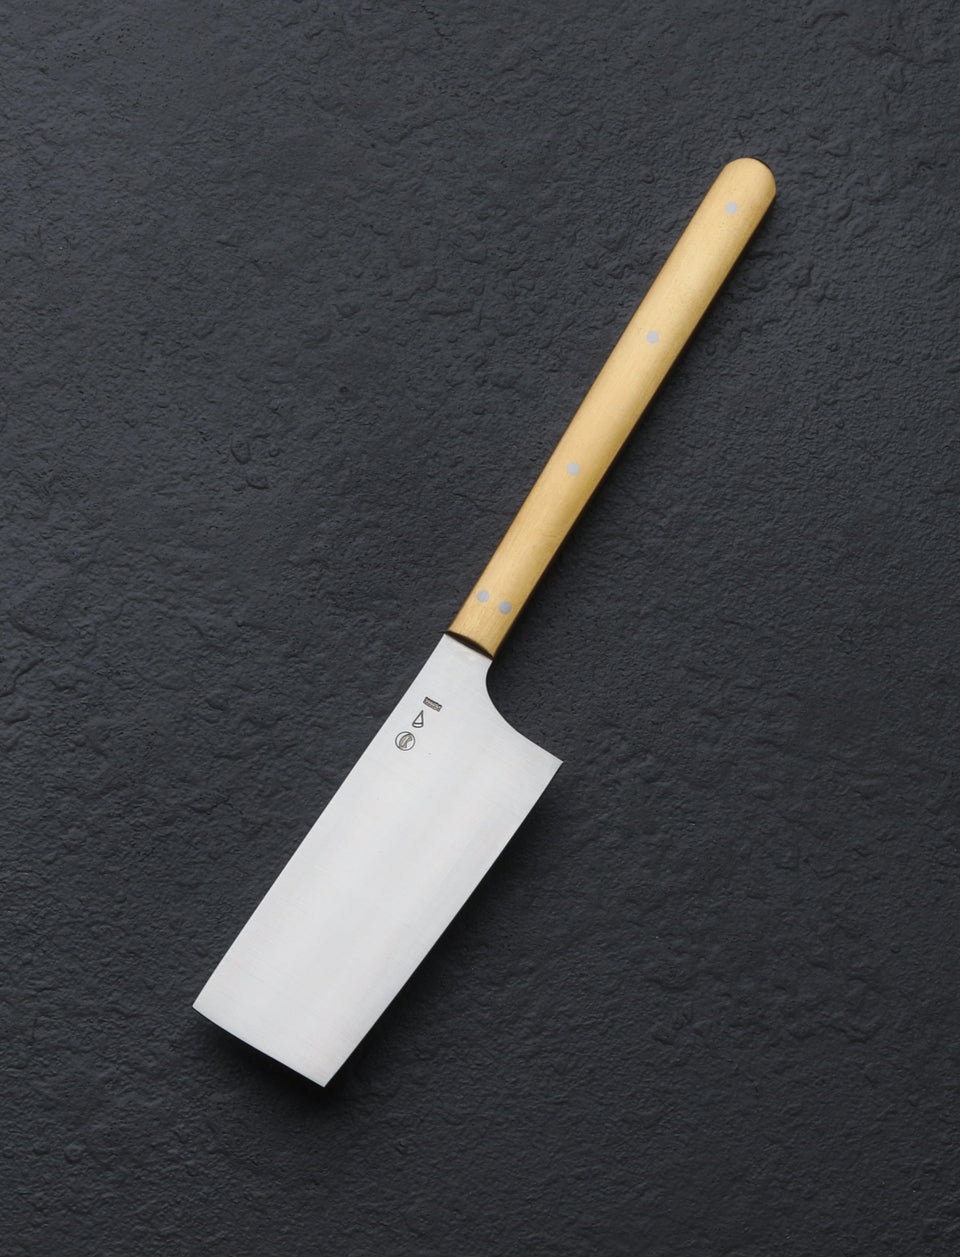 Azmaya - Japan Table Knives Azmaya Brass & Steel Cheese Knife